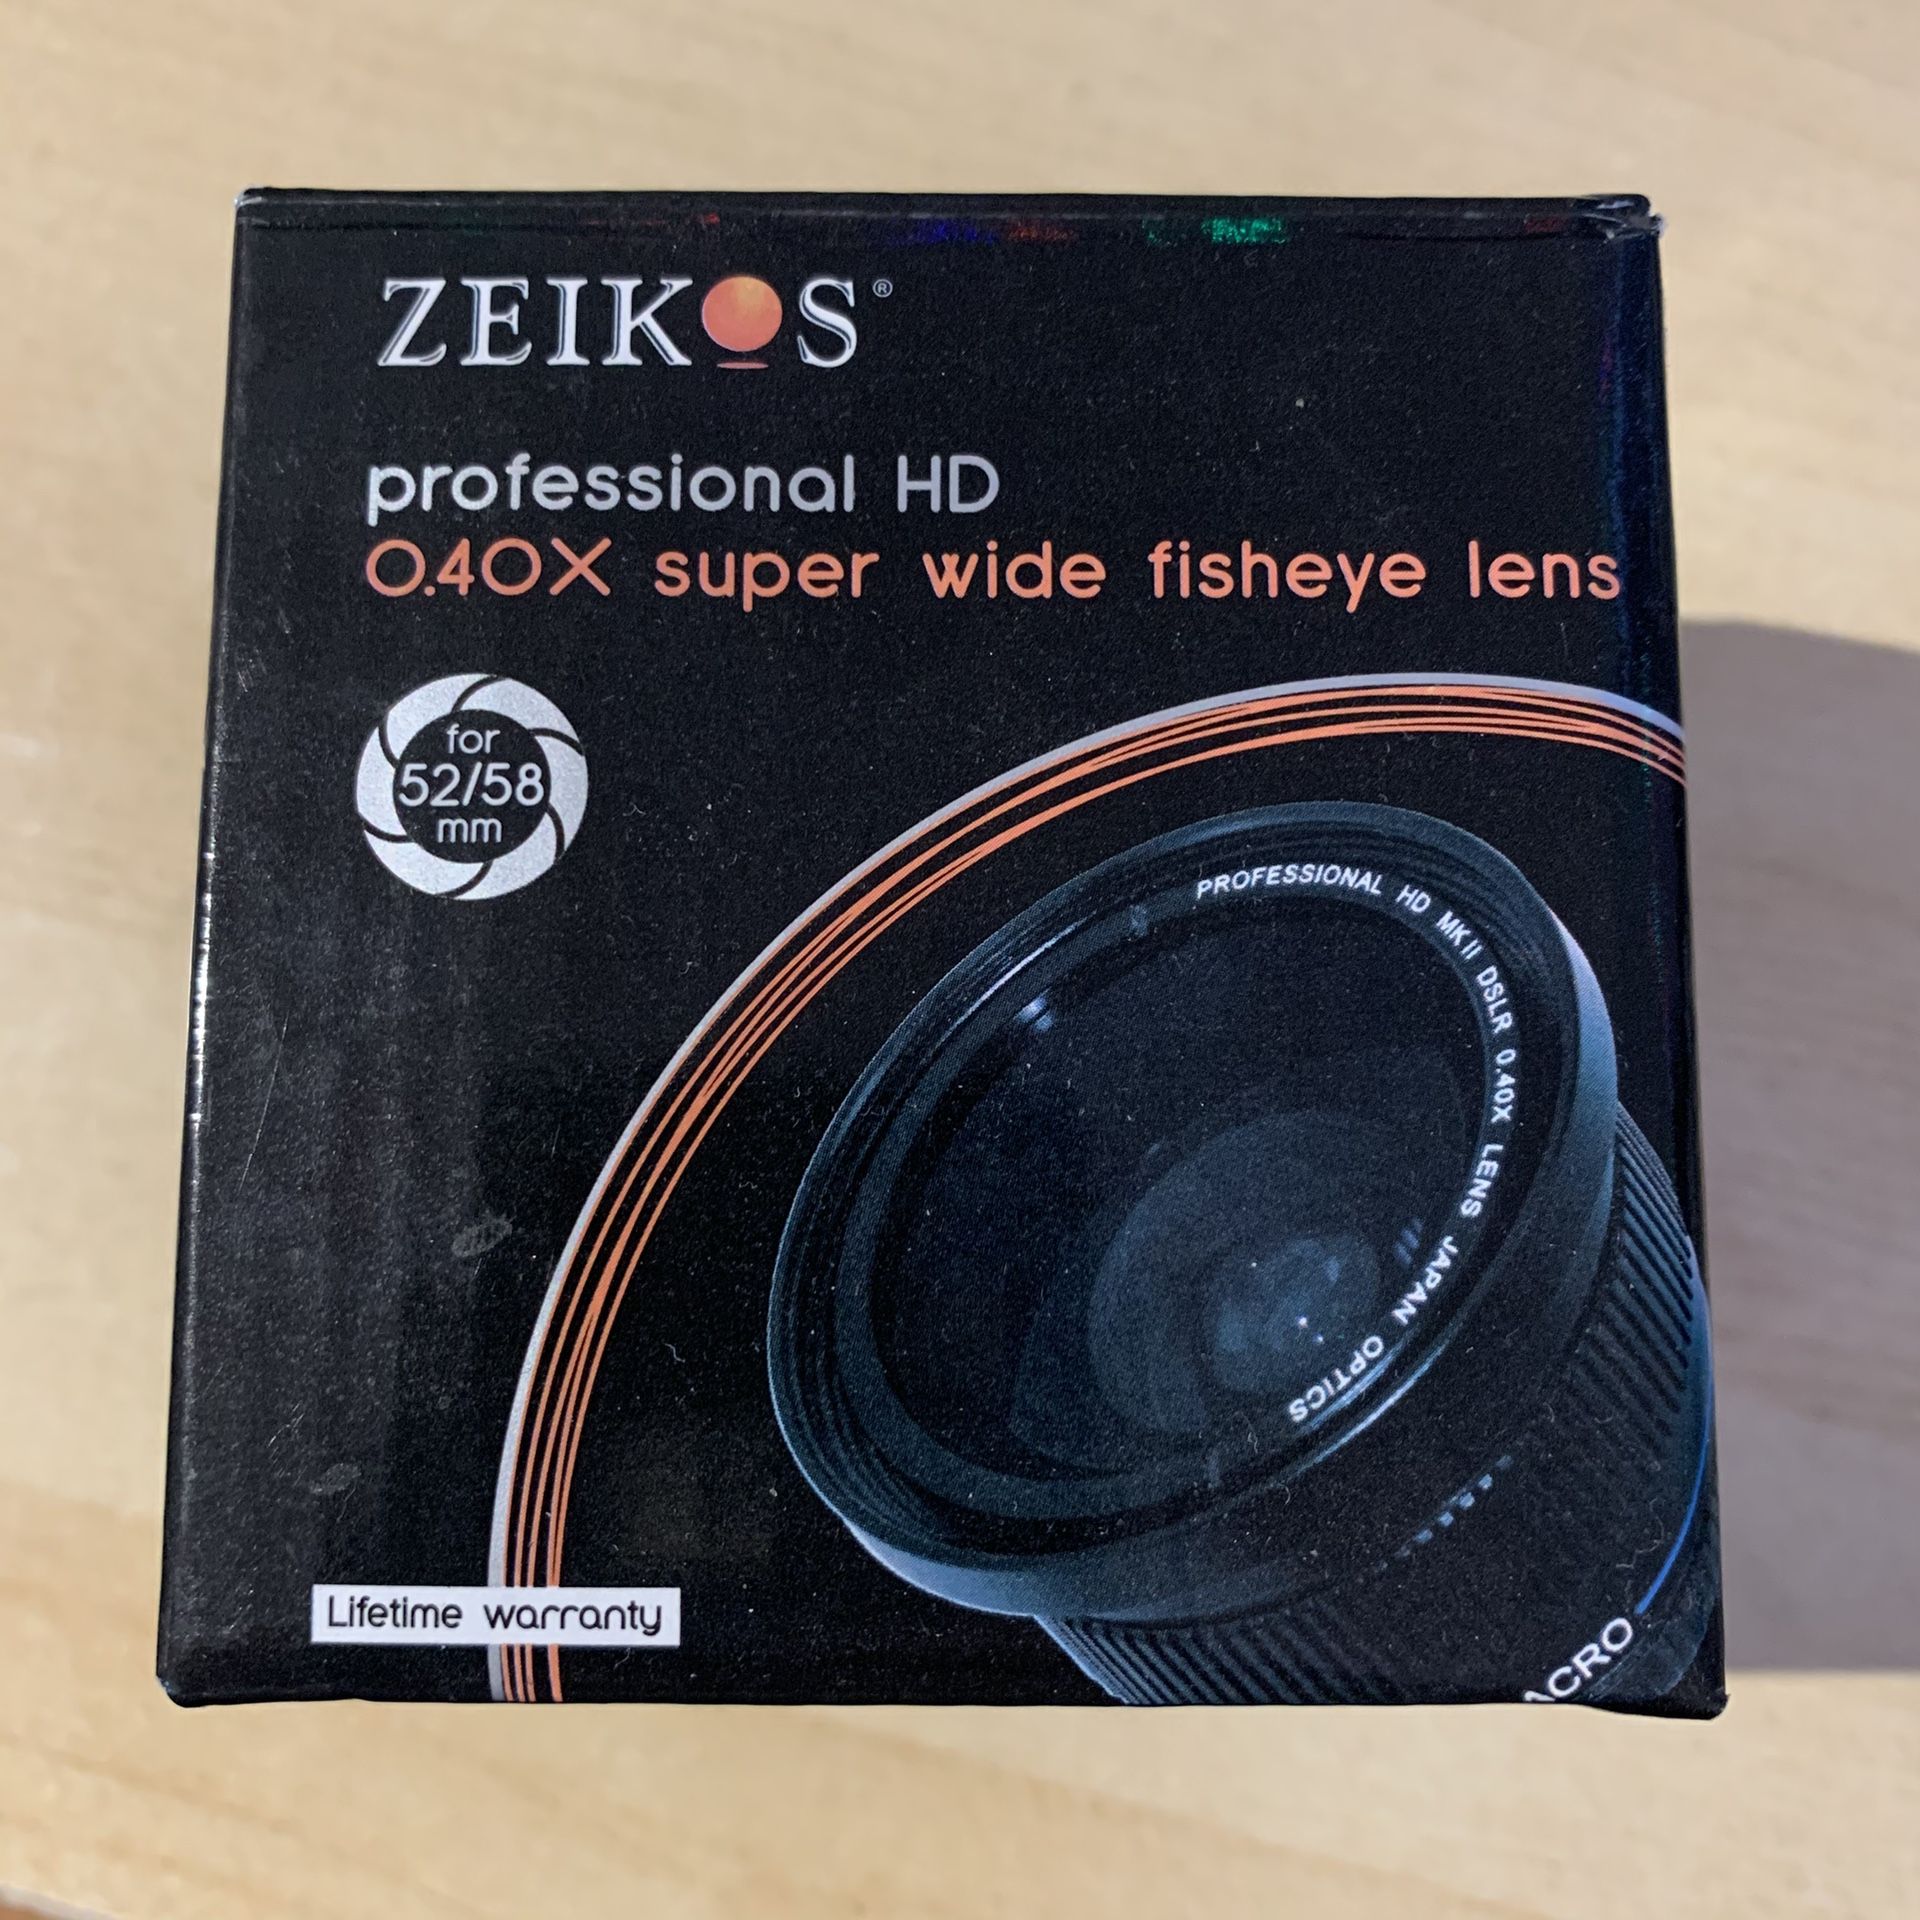 Zeikos fisheye lens for 52/58 mm